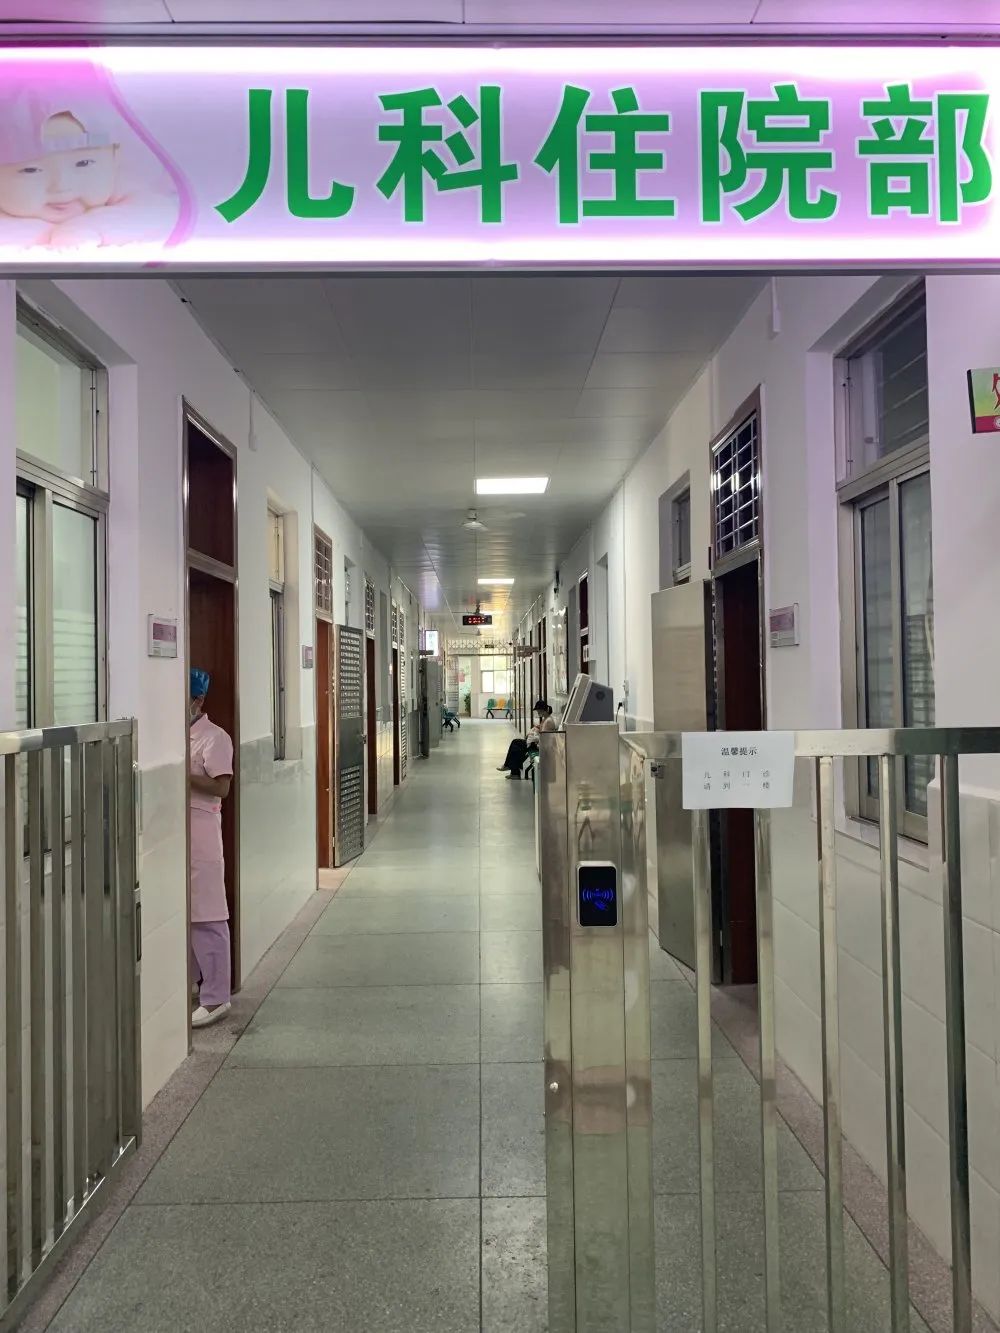 兴宁市妇幼保健计划生育服务中心新开设儿科住院病房并投入使用